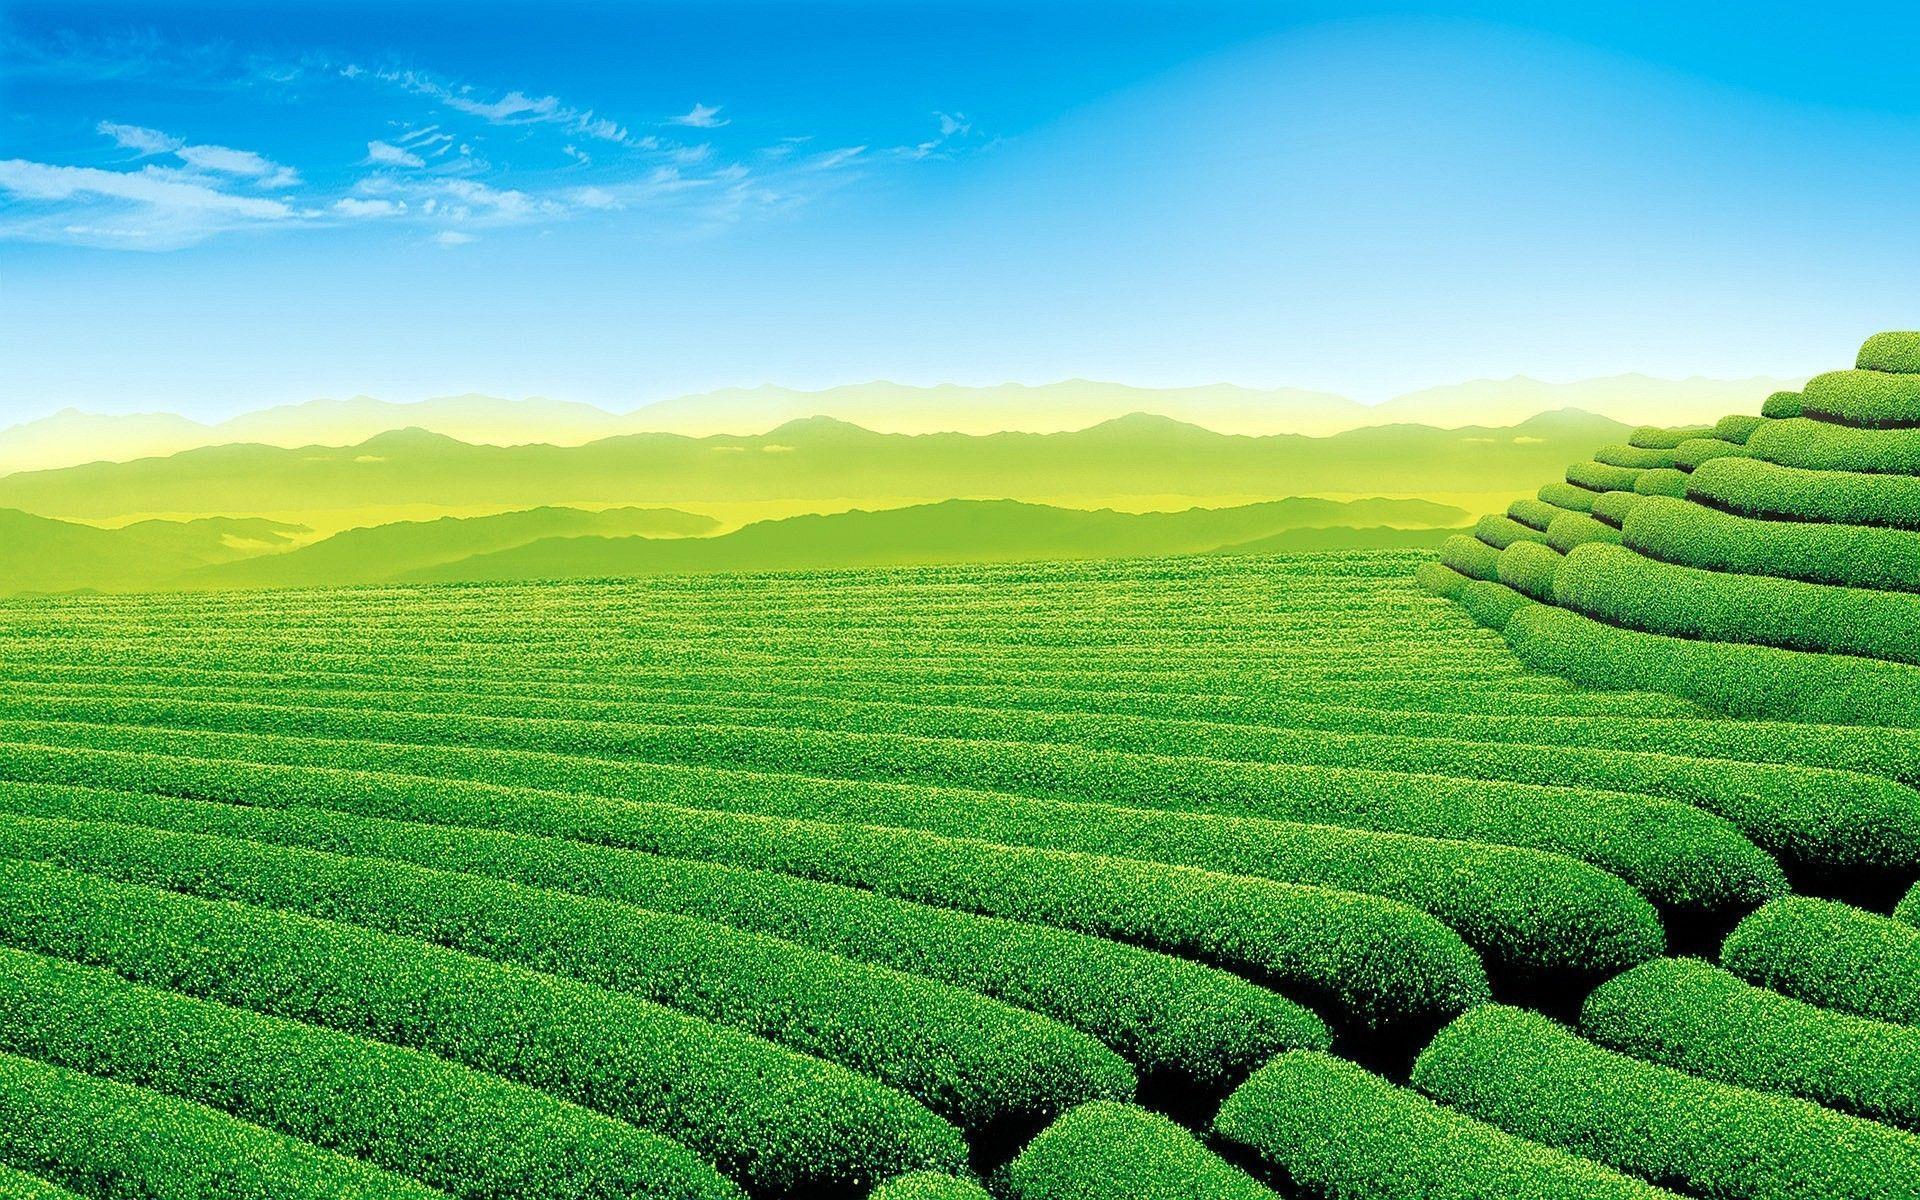 Trà đang trở thành thức uống được ưa chuộng trên khắp thế giới vì nó mang lại nhiều lợi ích cho sức khỏe. Vườn trà mê hoặc với cảnh quan đẹp và mùi thơm của trà sẽ làm bạn muốn thưởng thức cốc trà nóng tức thì. Hãy xem những bức ảnh về vườn trà để khám phá vẻ đẹp của nó và tìm hiểu thêm về trà.